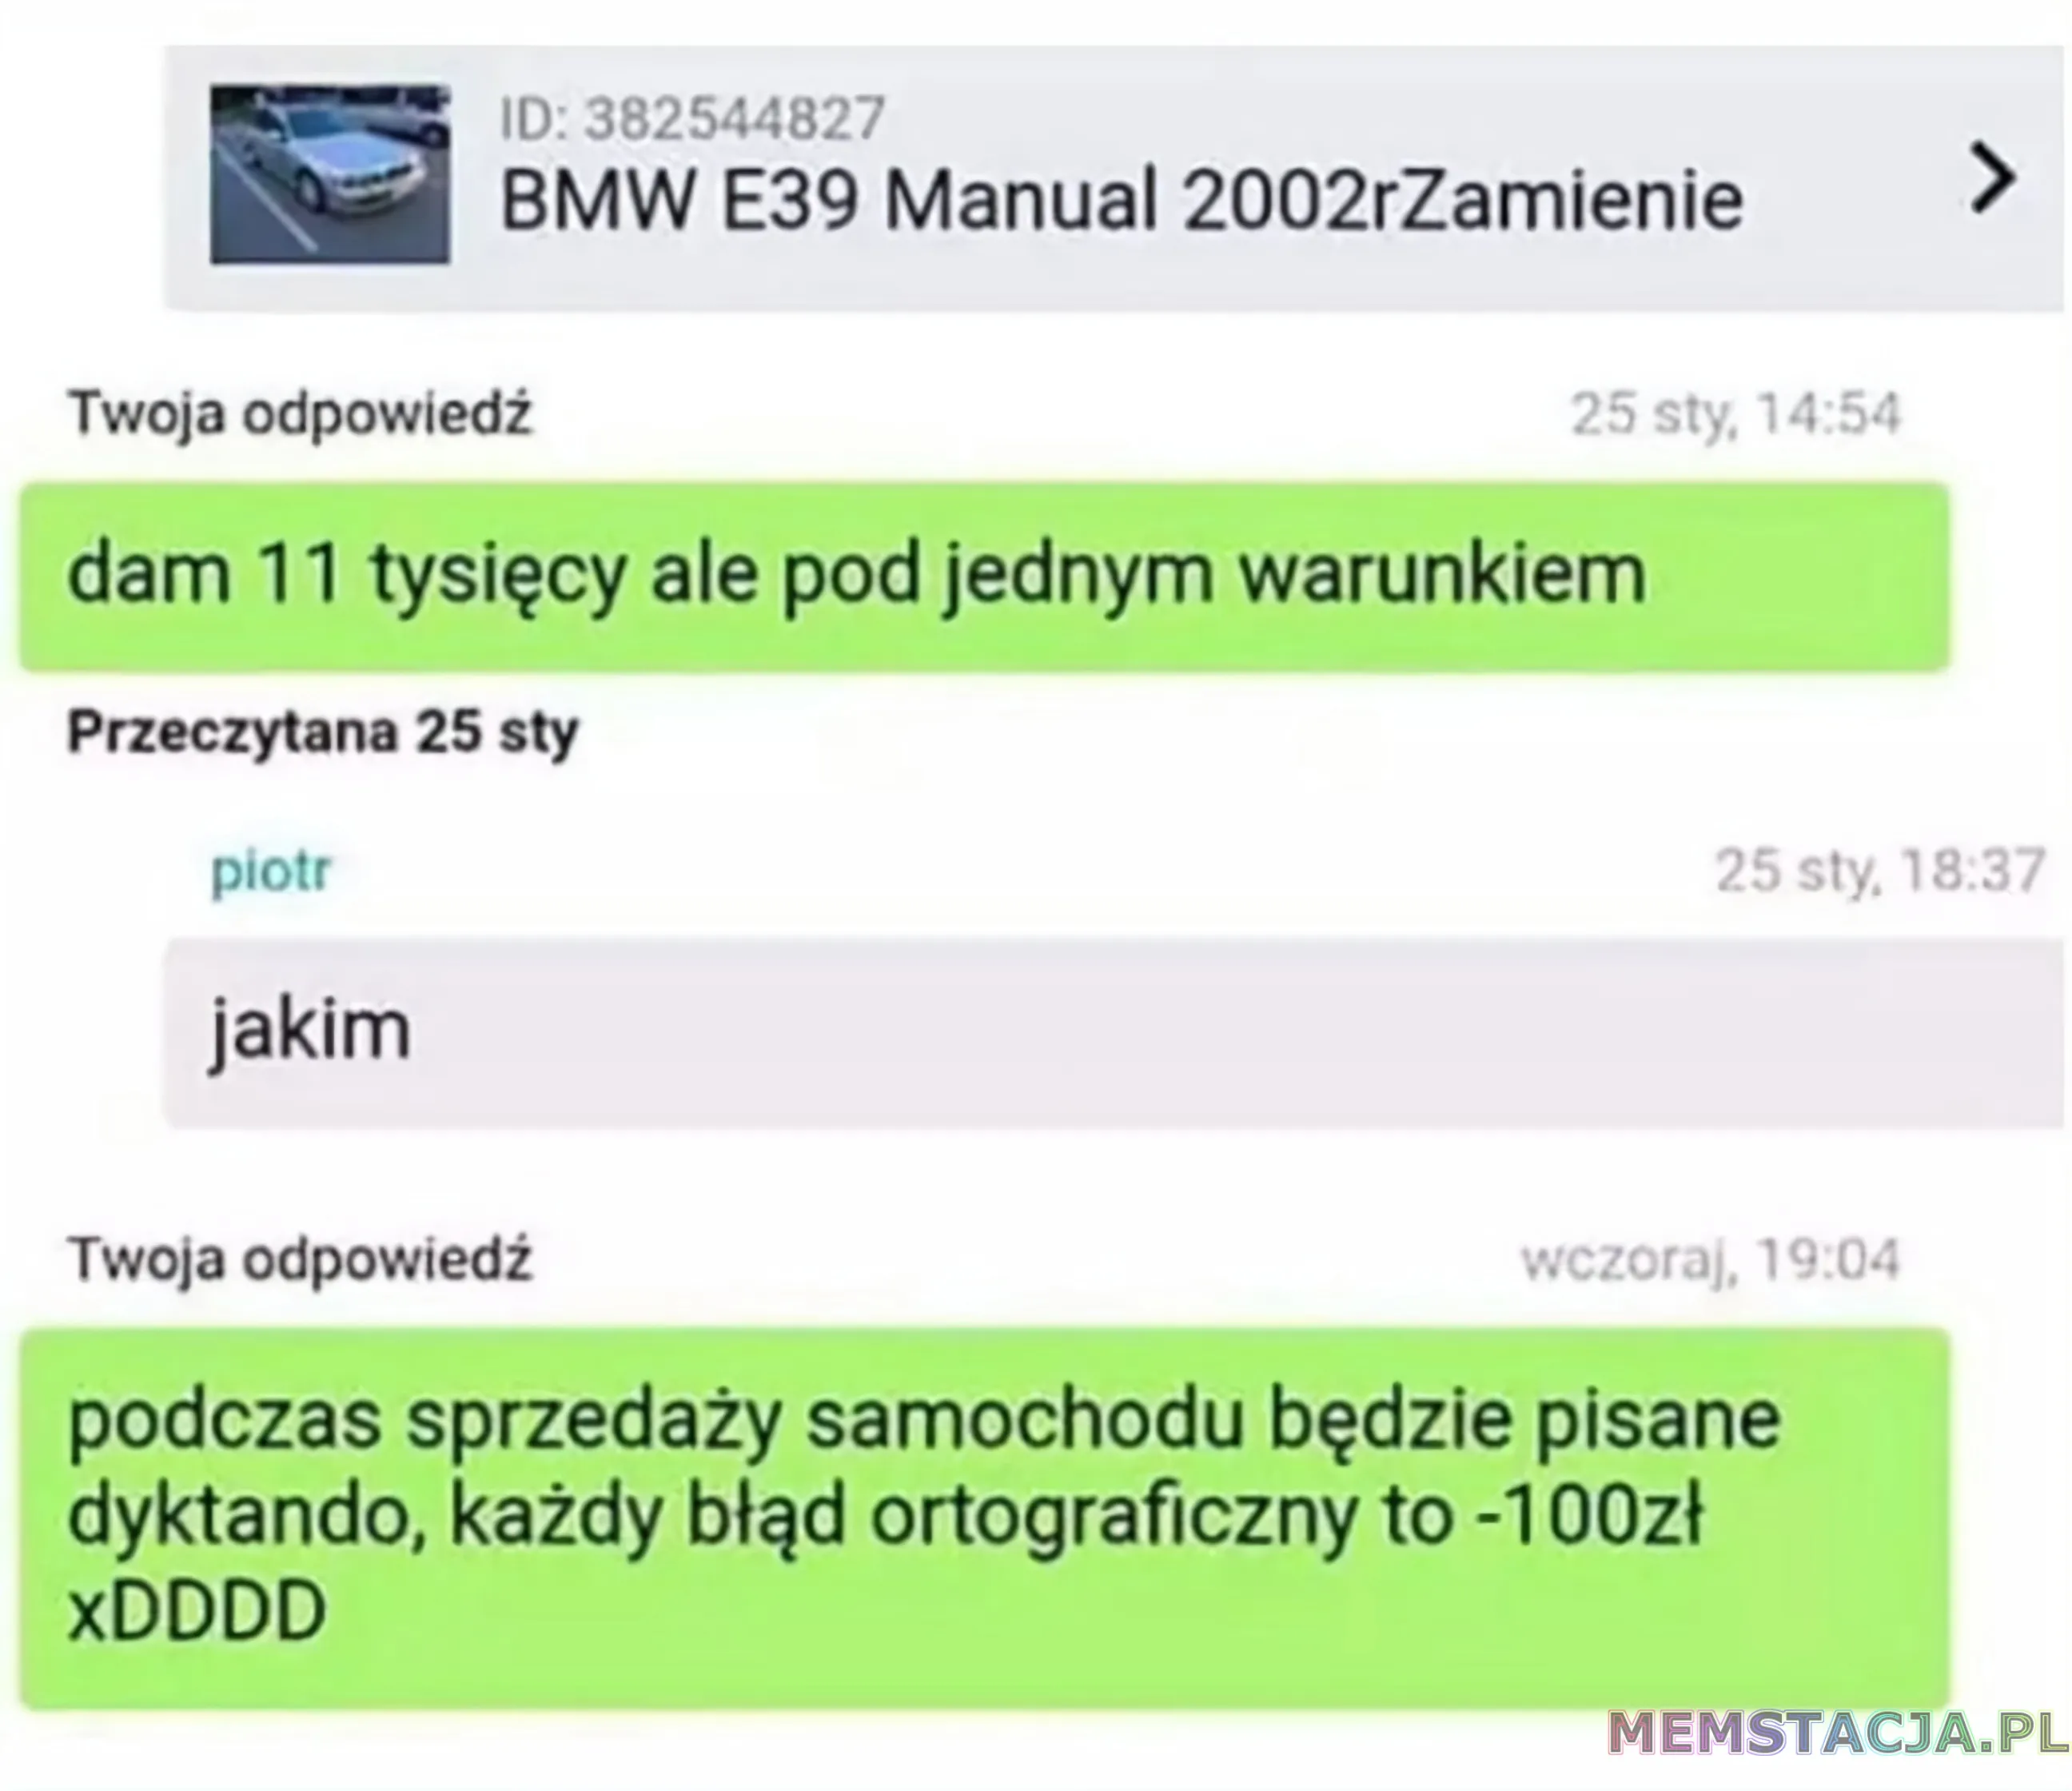 Wiadomość z portalu ogłoszeniowego, dotyczące BMW E39 Manual 2002r zamienie. Twoja odpiwiedź: 'dam jedenaście tysięcy ale pod jednym warunkiem'; piotr: 'jakim'; Twoja odpowiedź: 'podczas sprzedaży samochodu będzie pisanie dyktando, każdy błąd ortograficzny to minus stop złotych xDDDD'